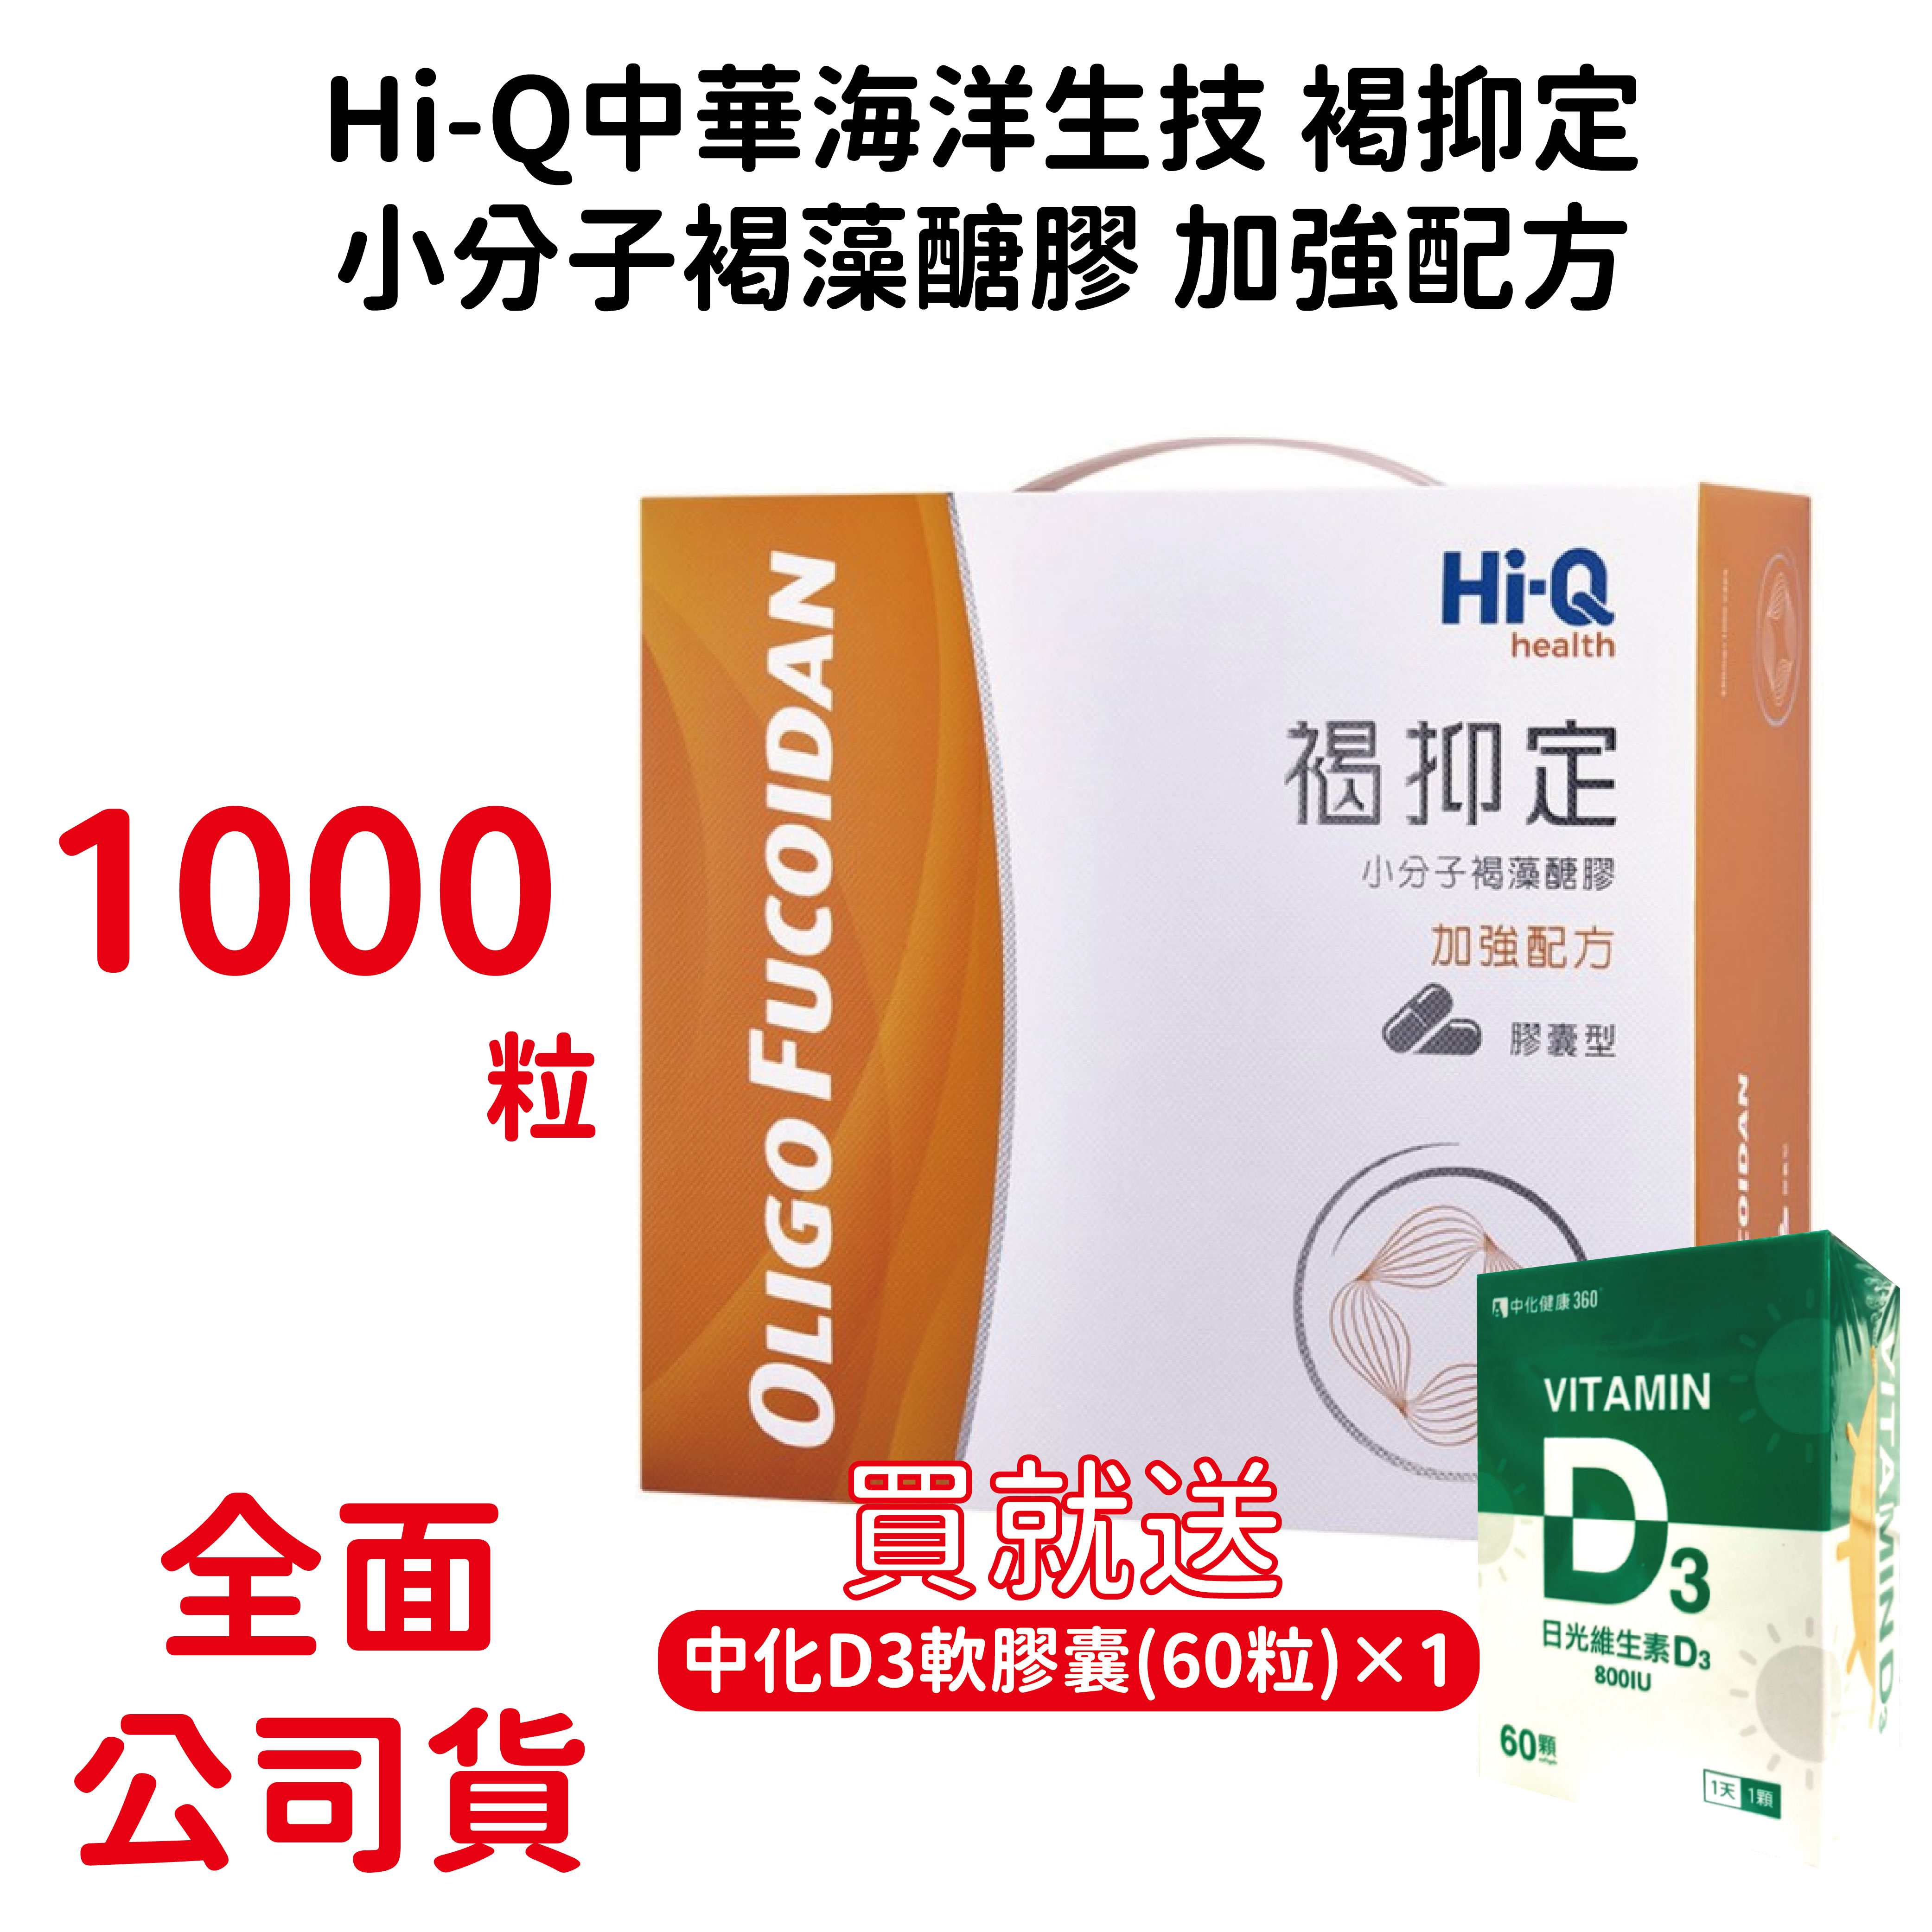 褐藻醣膠1000顆禮盒裝 褐抑定加強配方 台灣公司貨 有序號 優惠大包裝